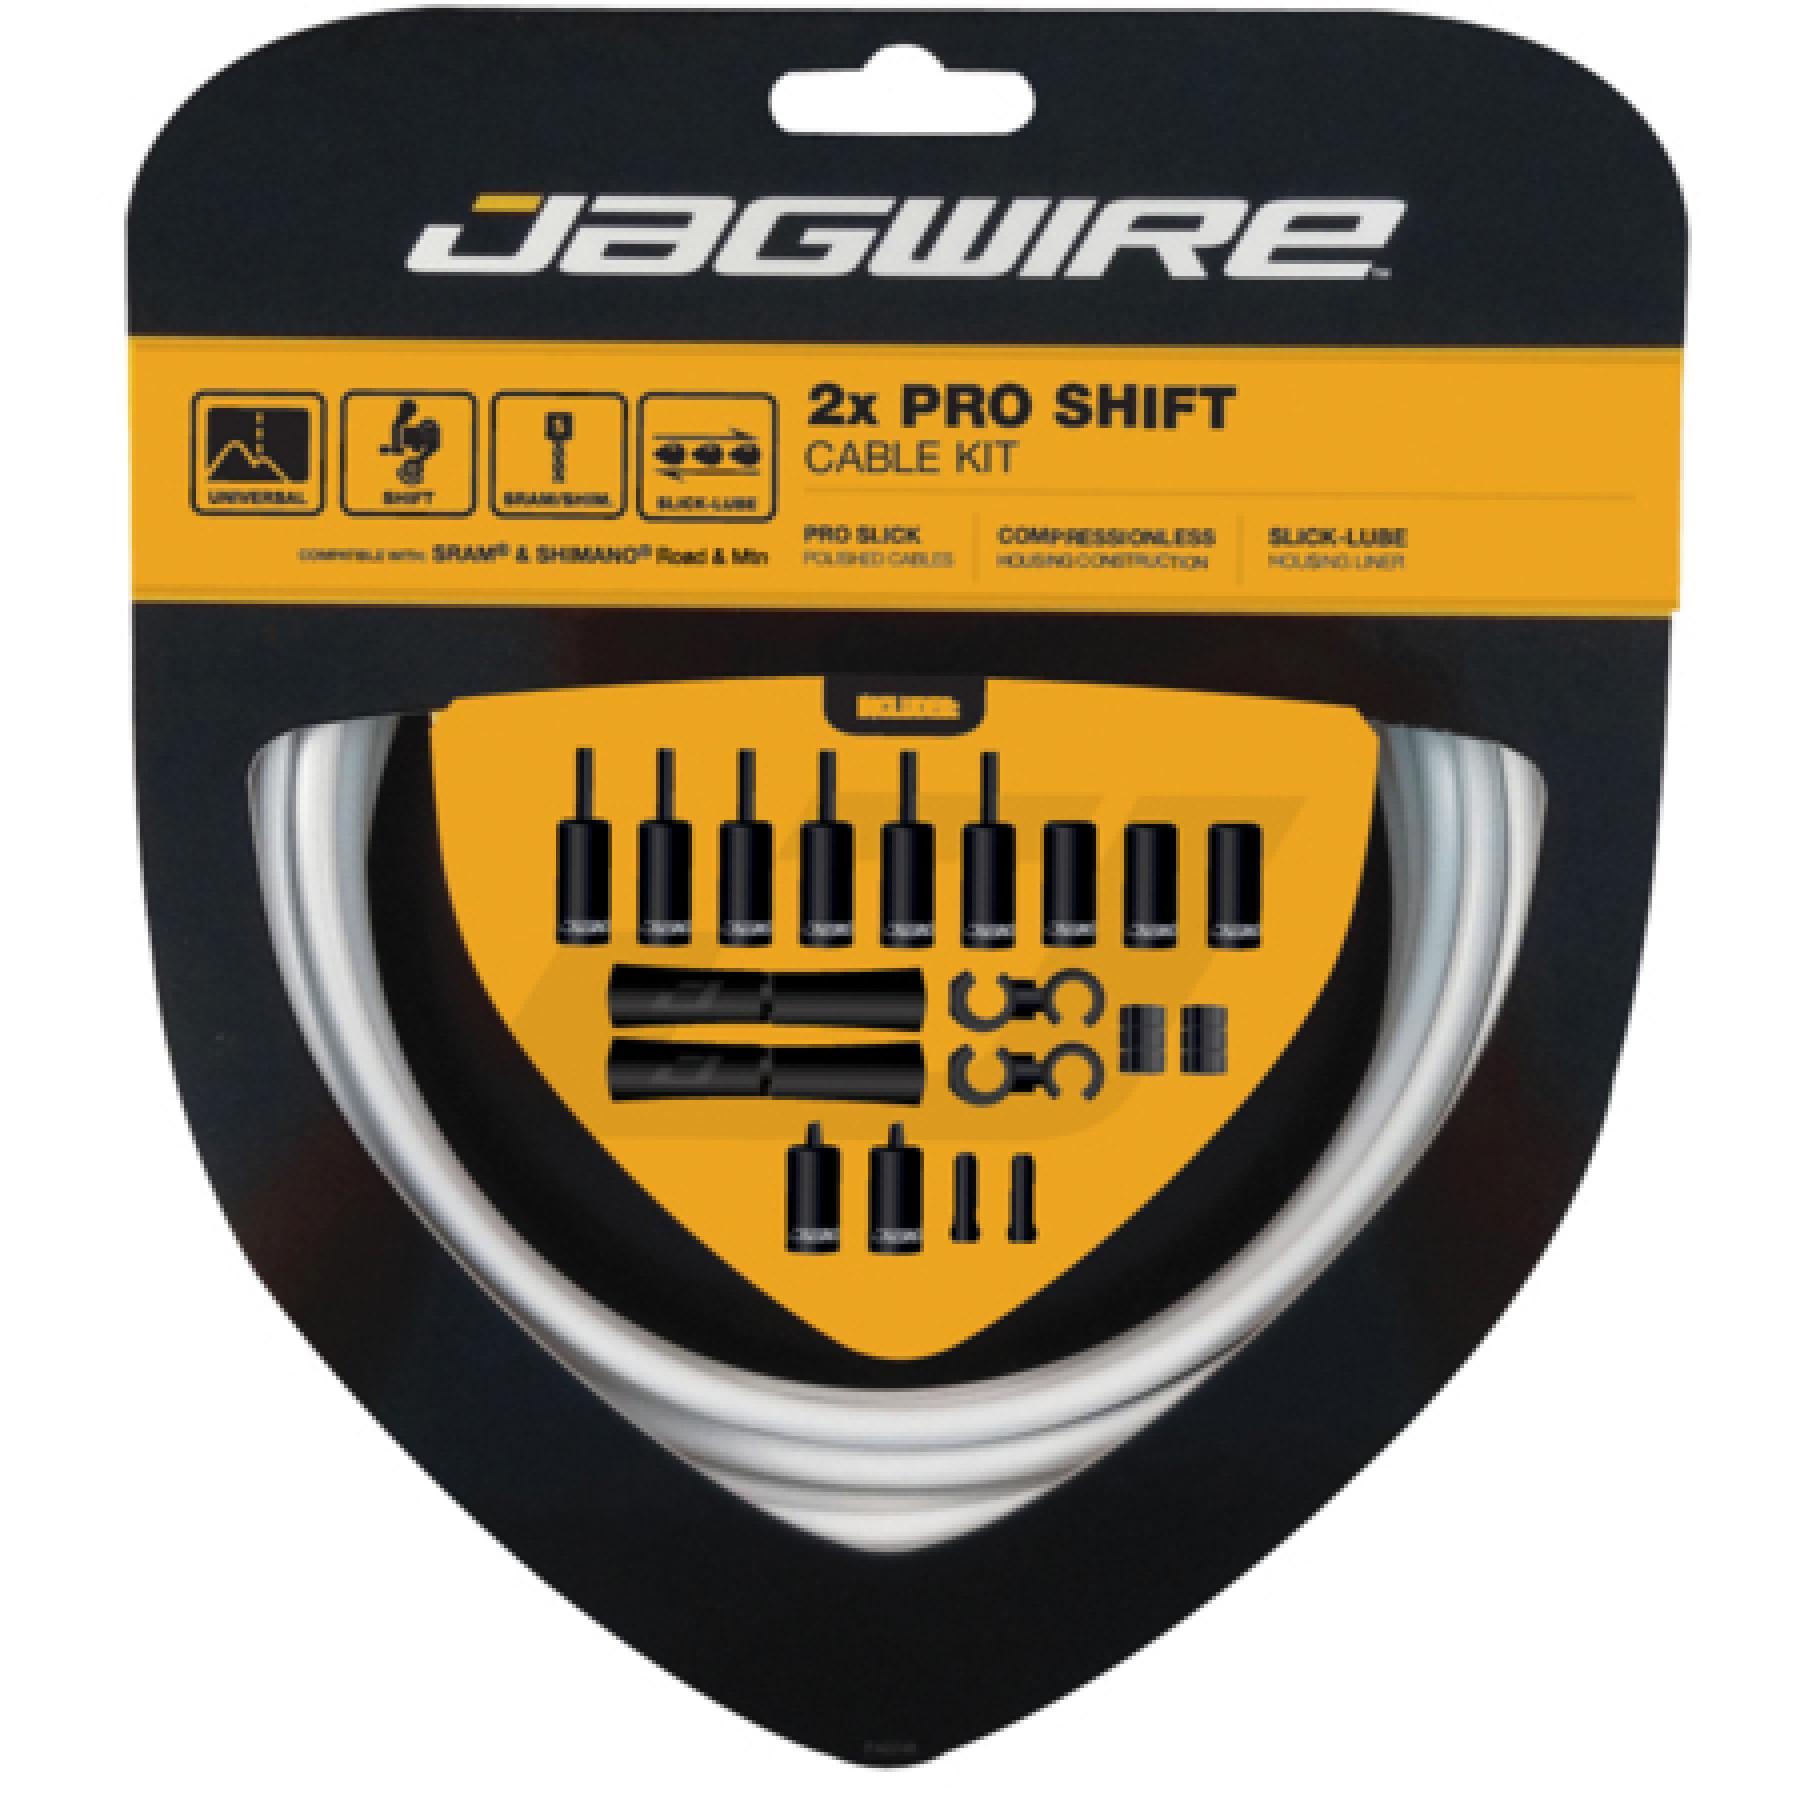 Kabel för växelförare Jagwire 2X Pro